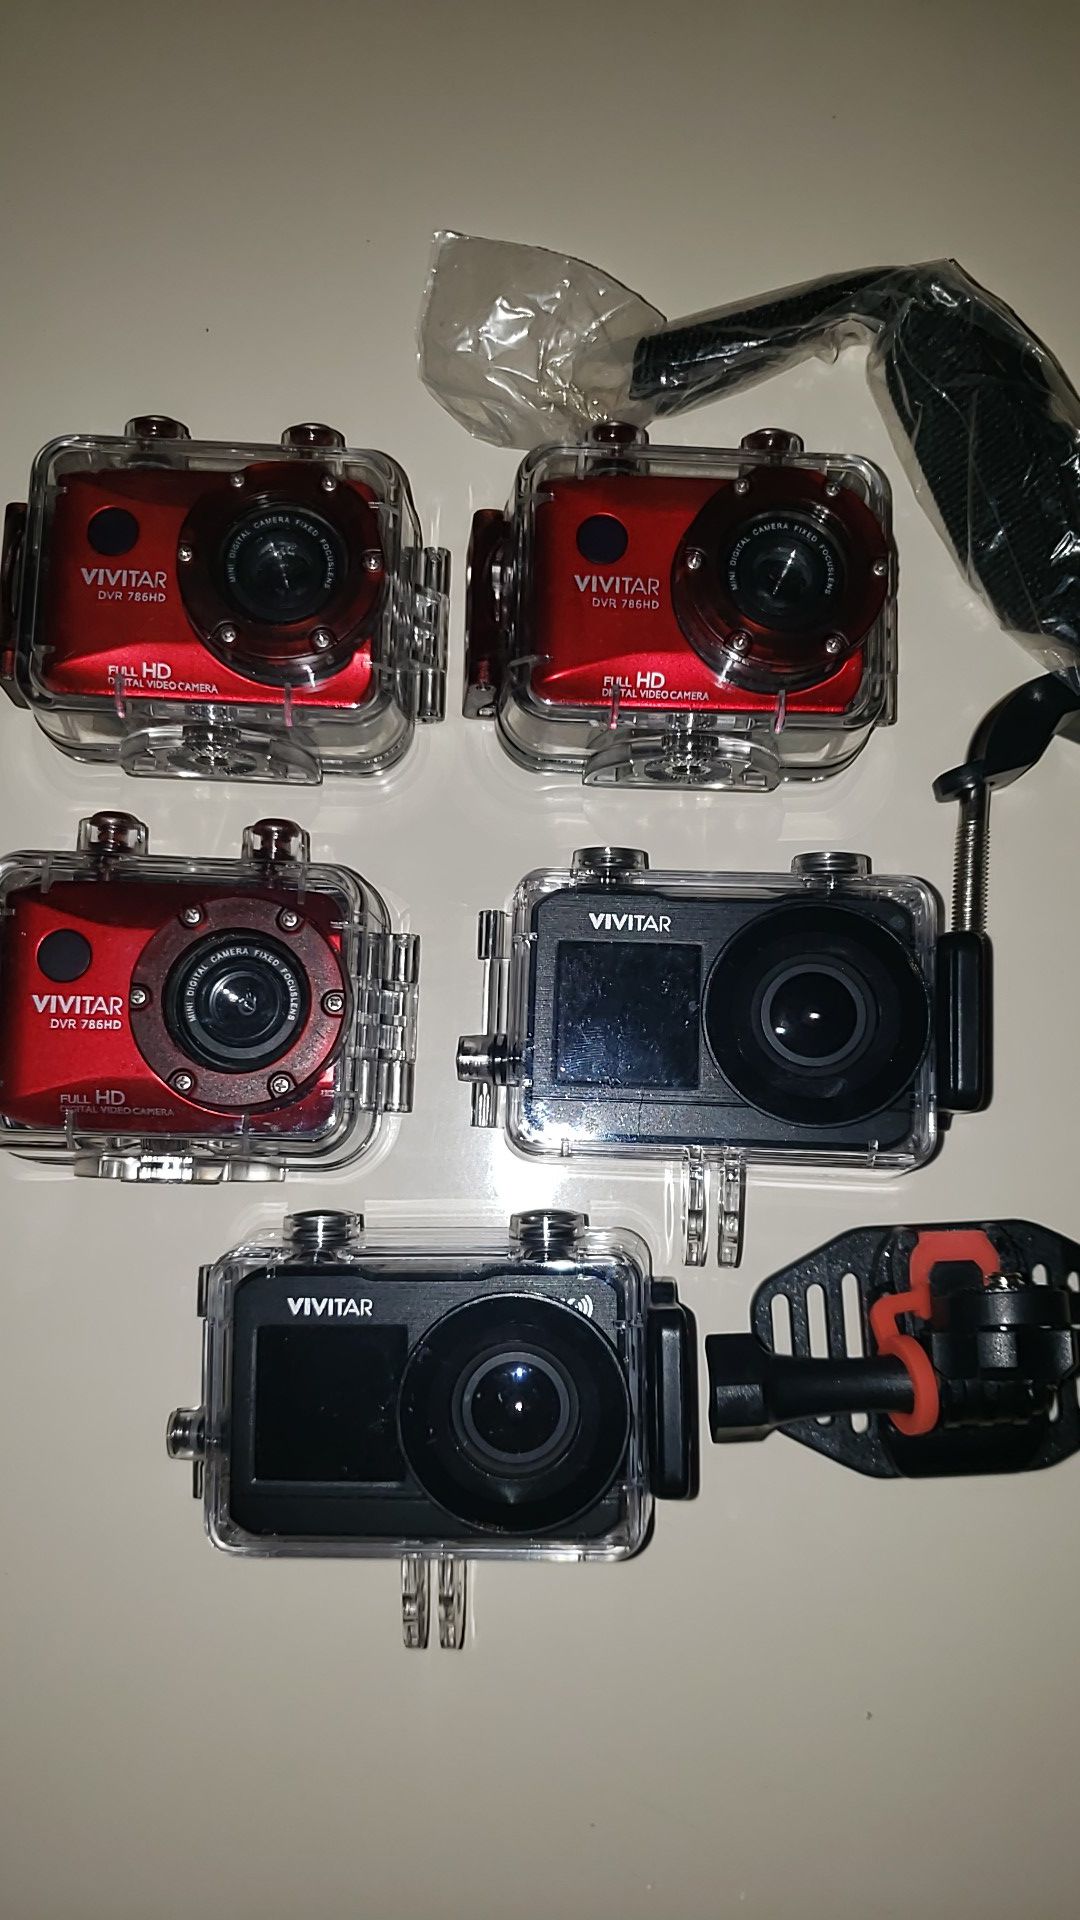 5 Go Pro Cameras